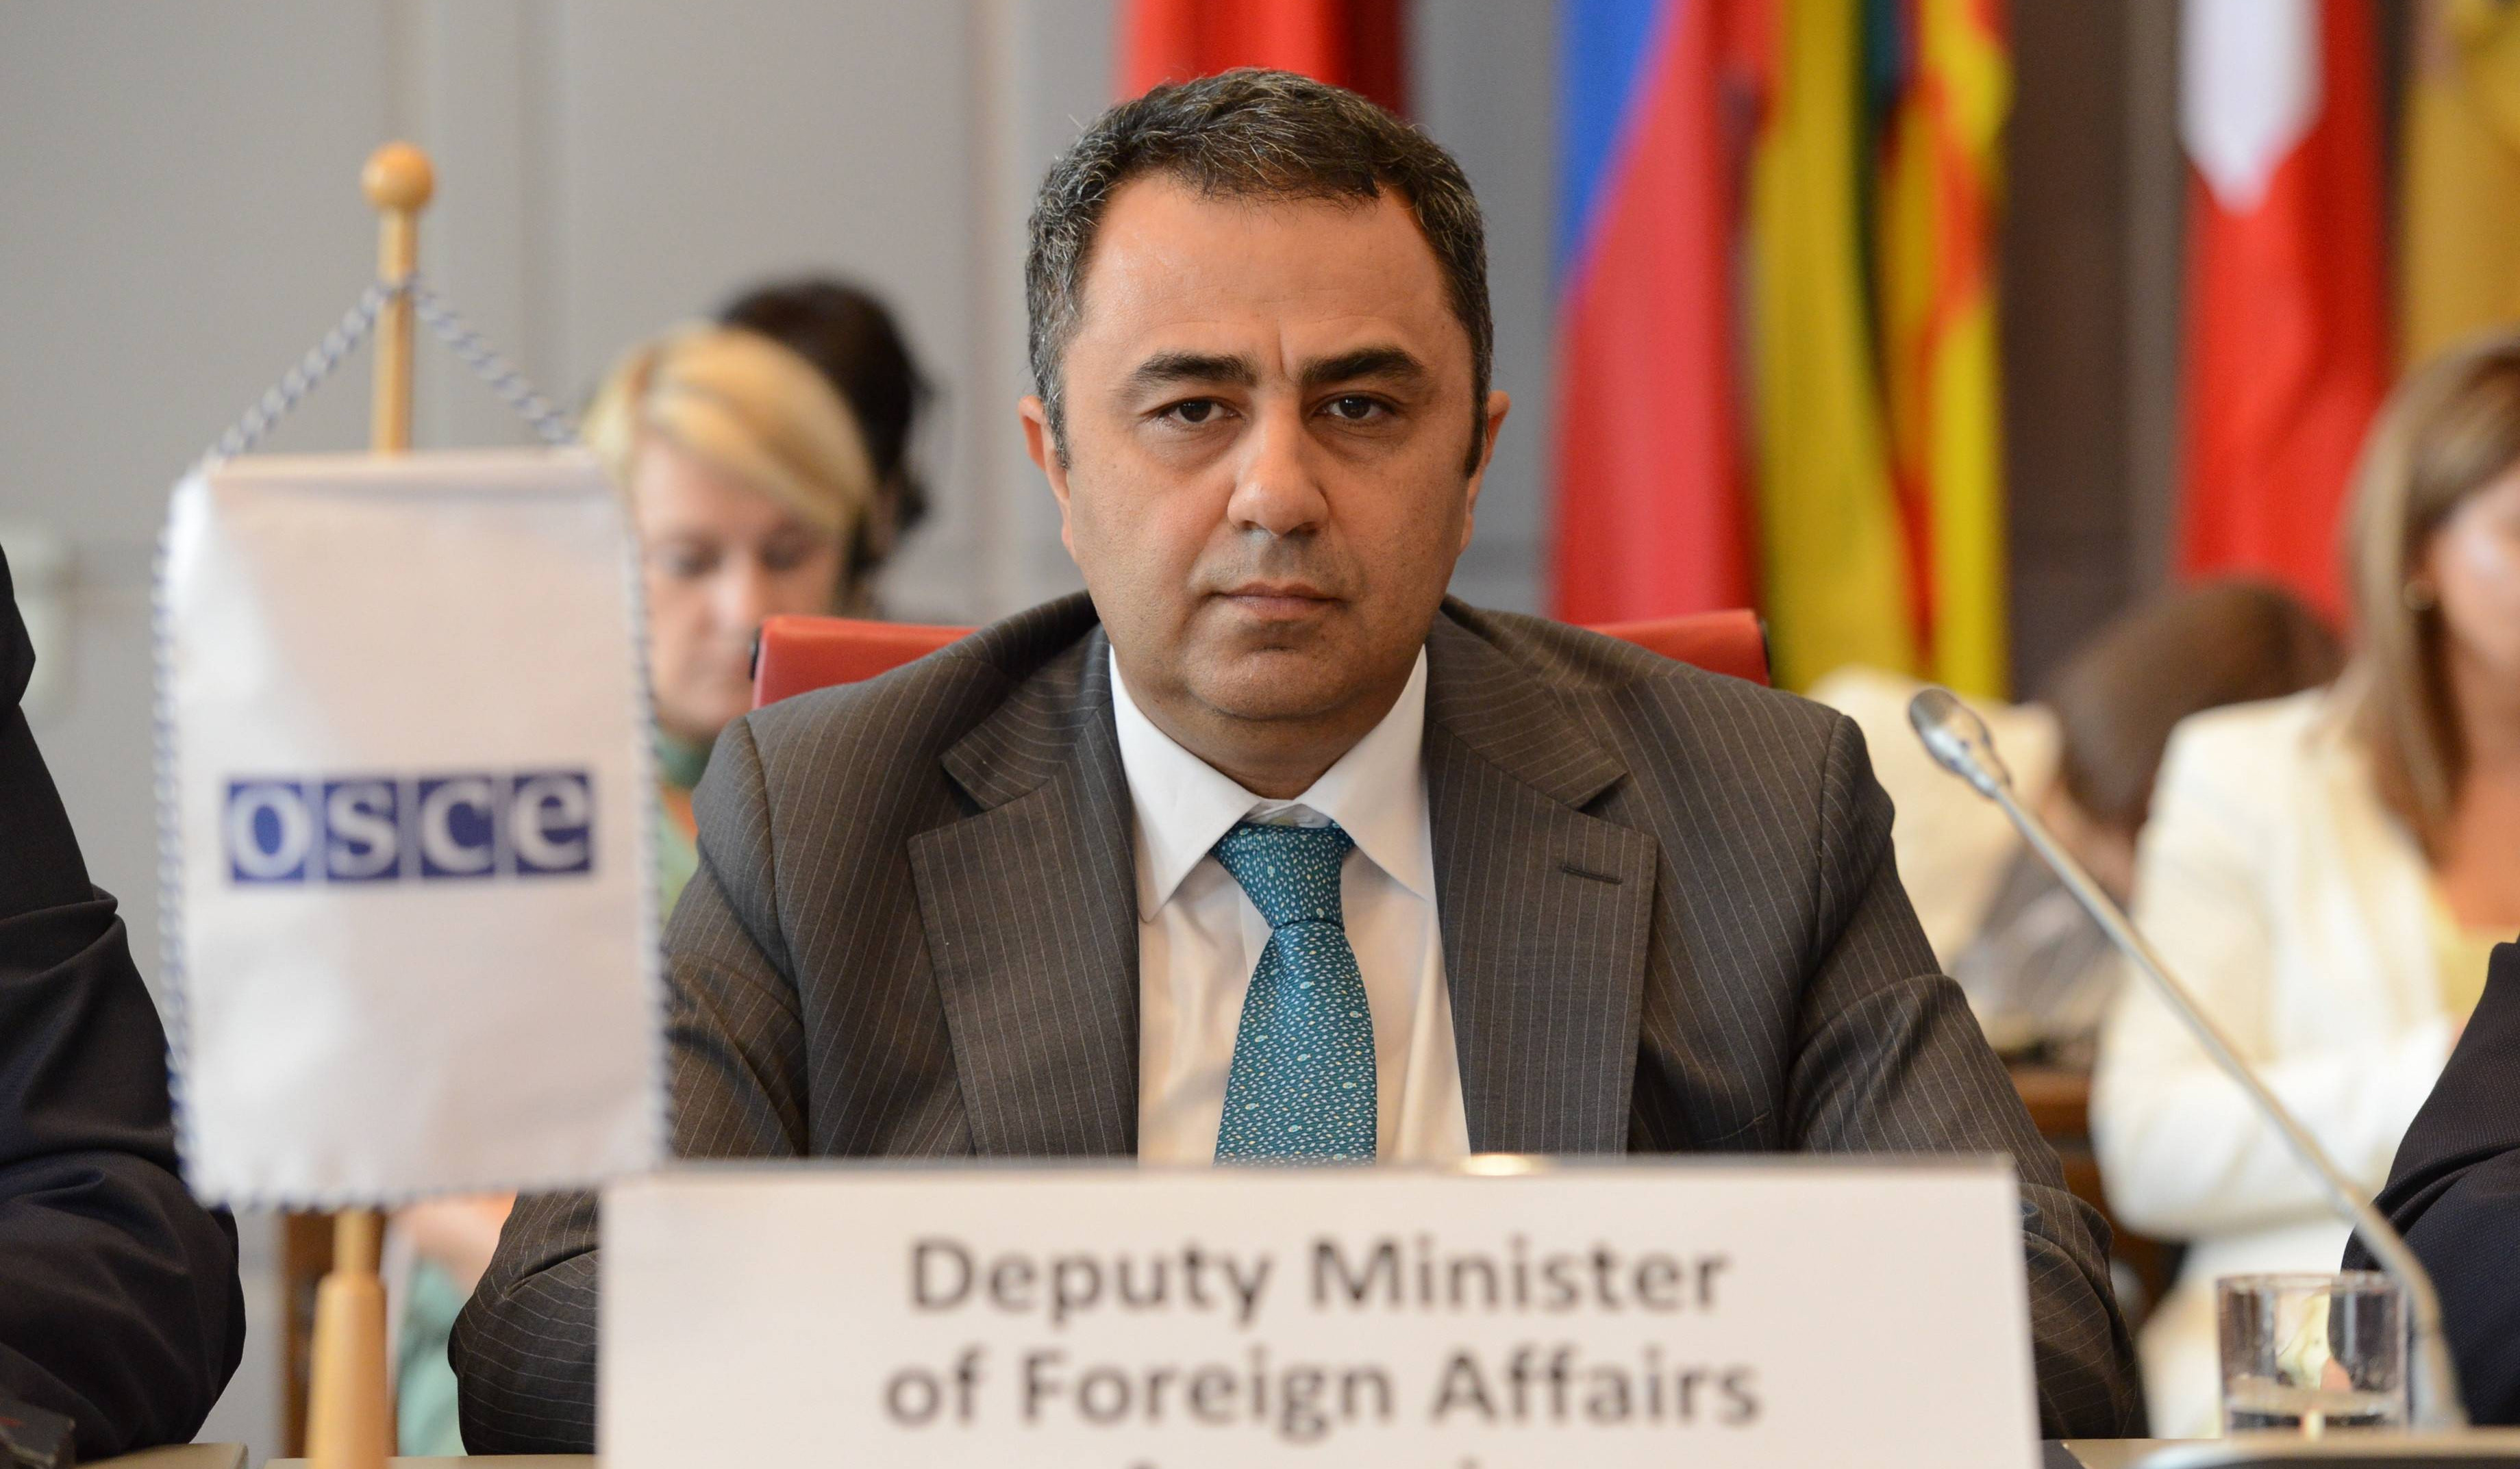 Азербайджан готовится к новой военной агрессии против Армении и Нагорного Карабаха: Заместитель министра иностранных дел РА на сессии ОБСЕ